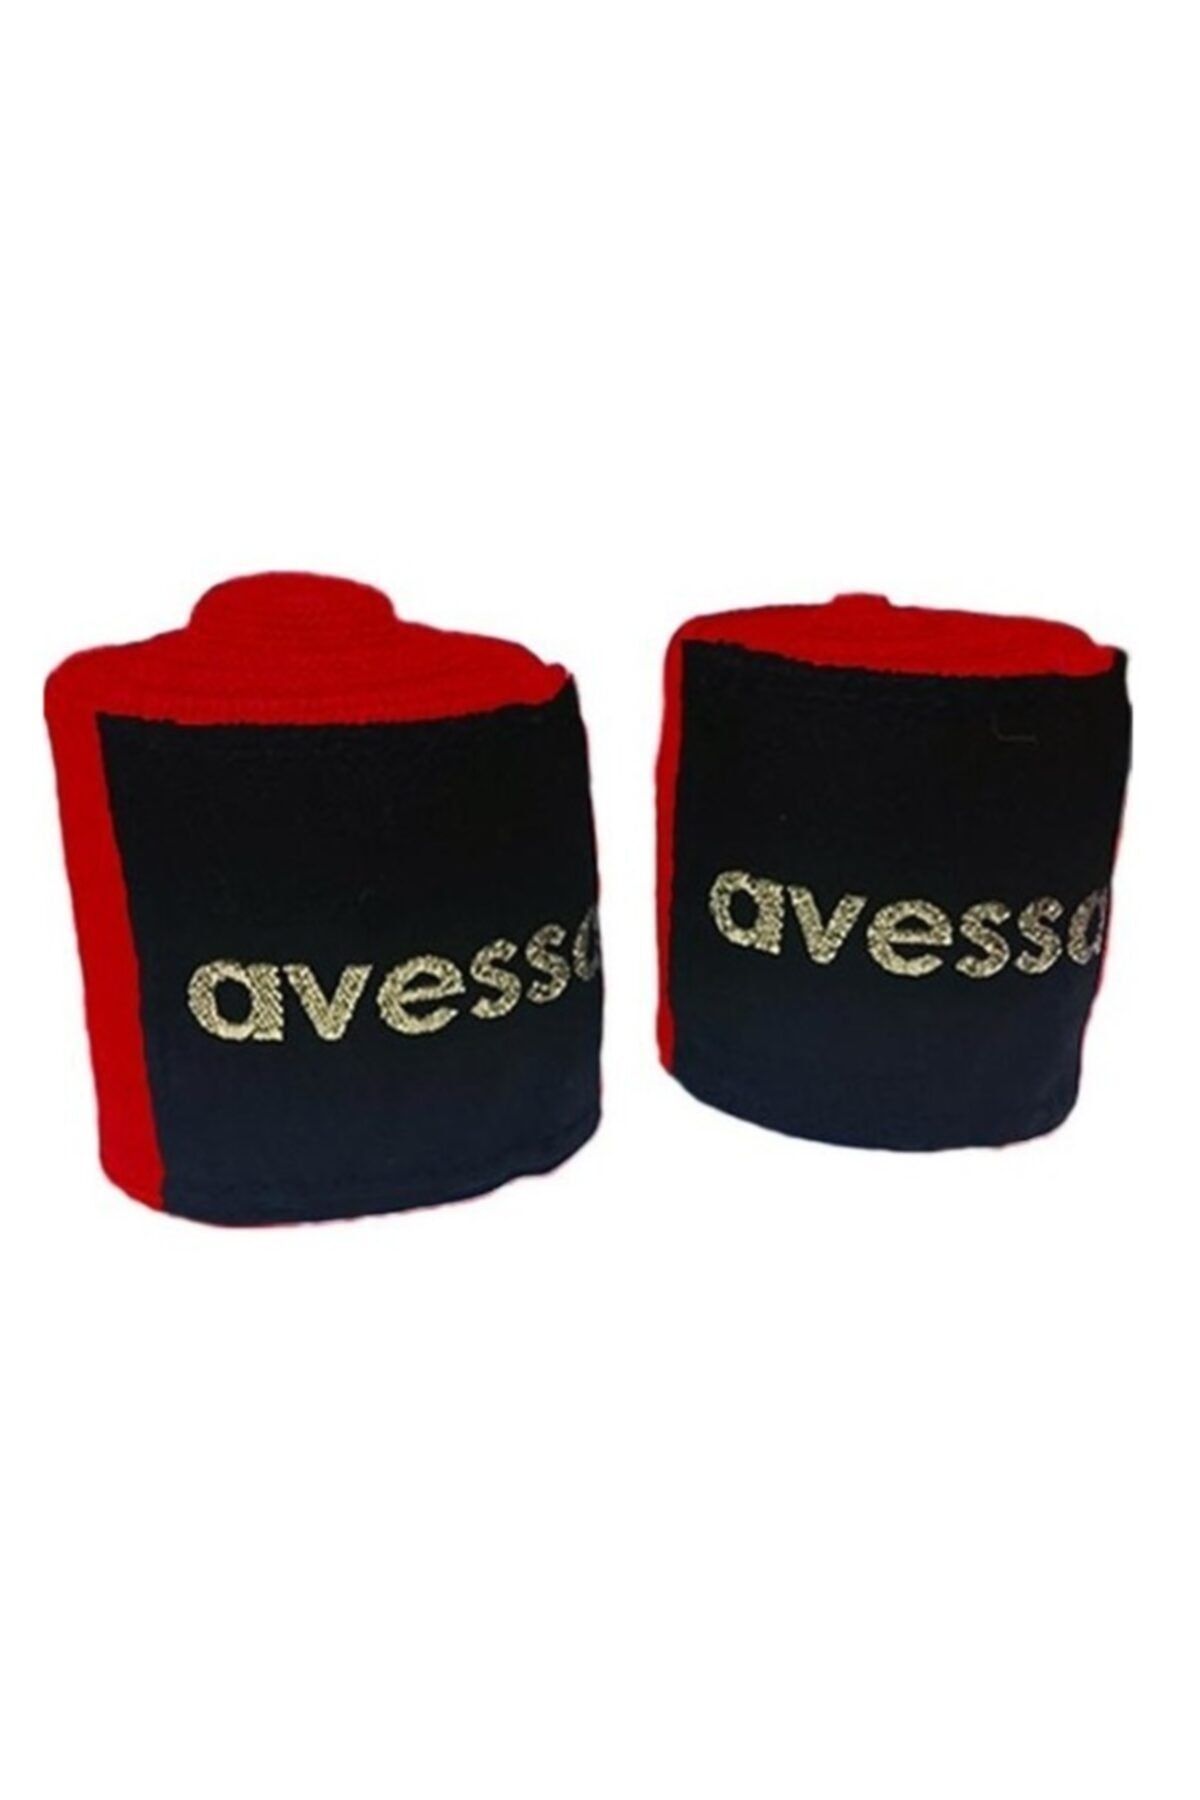 Avessa Boks Bandajı 3.5 Metre %100 Polyester Elastik Boks Bilek Bandajı Bilek Sargısı Çift (2 Adet)